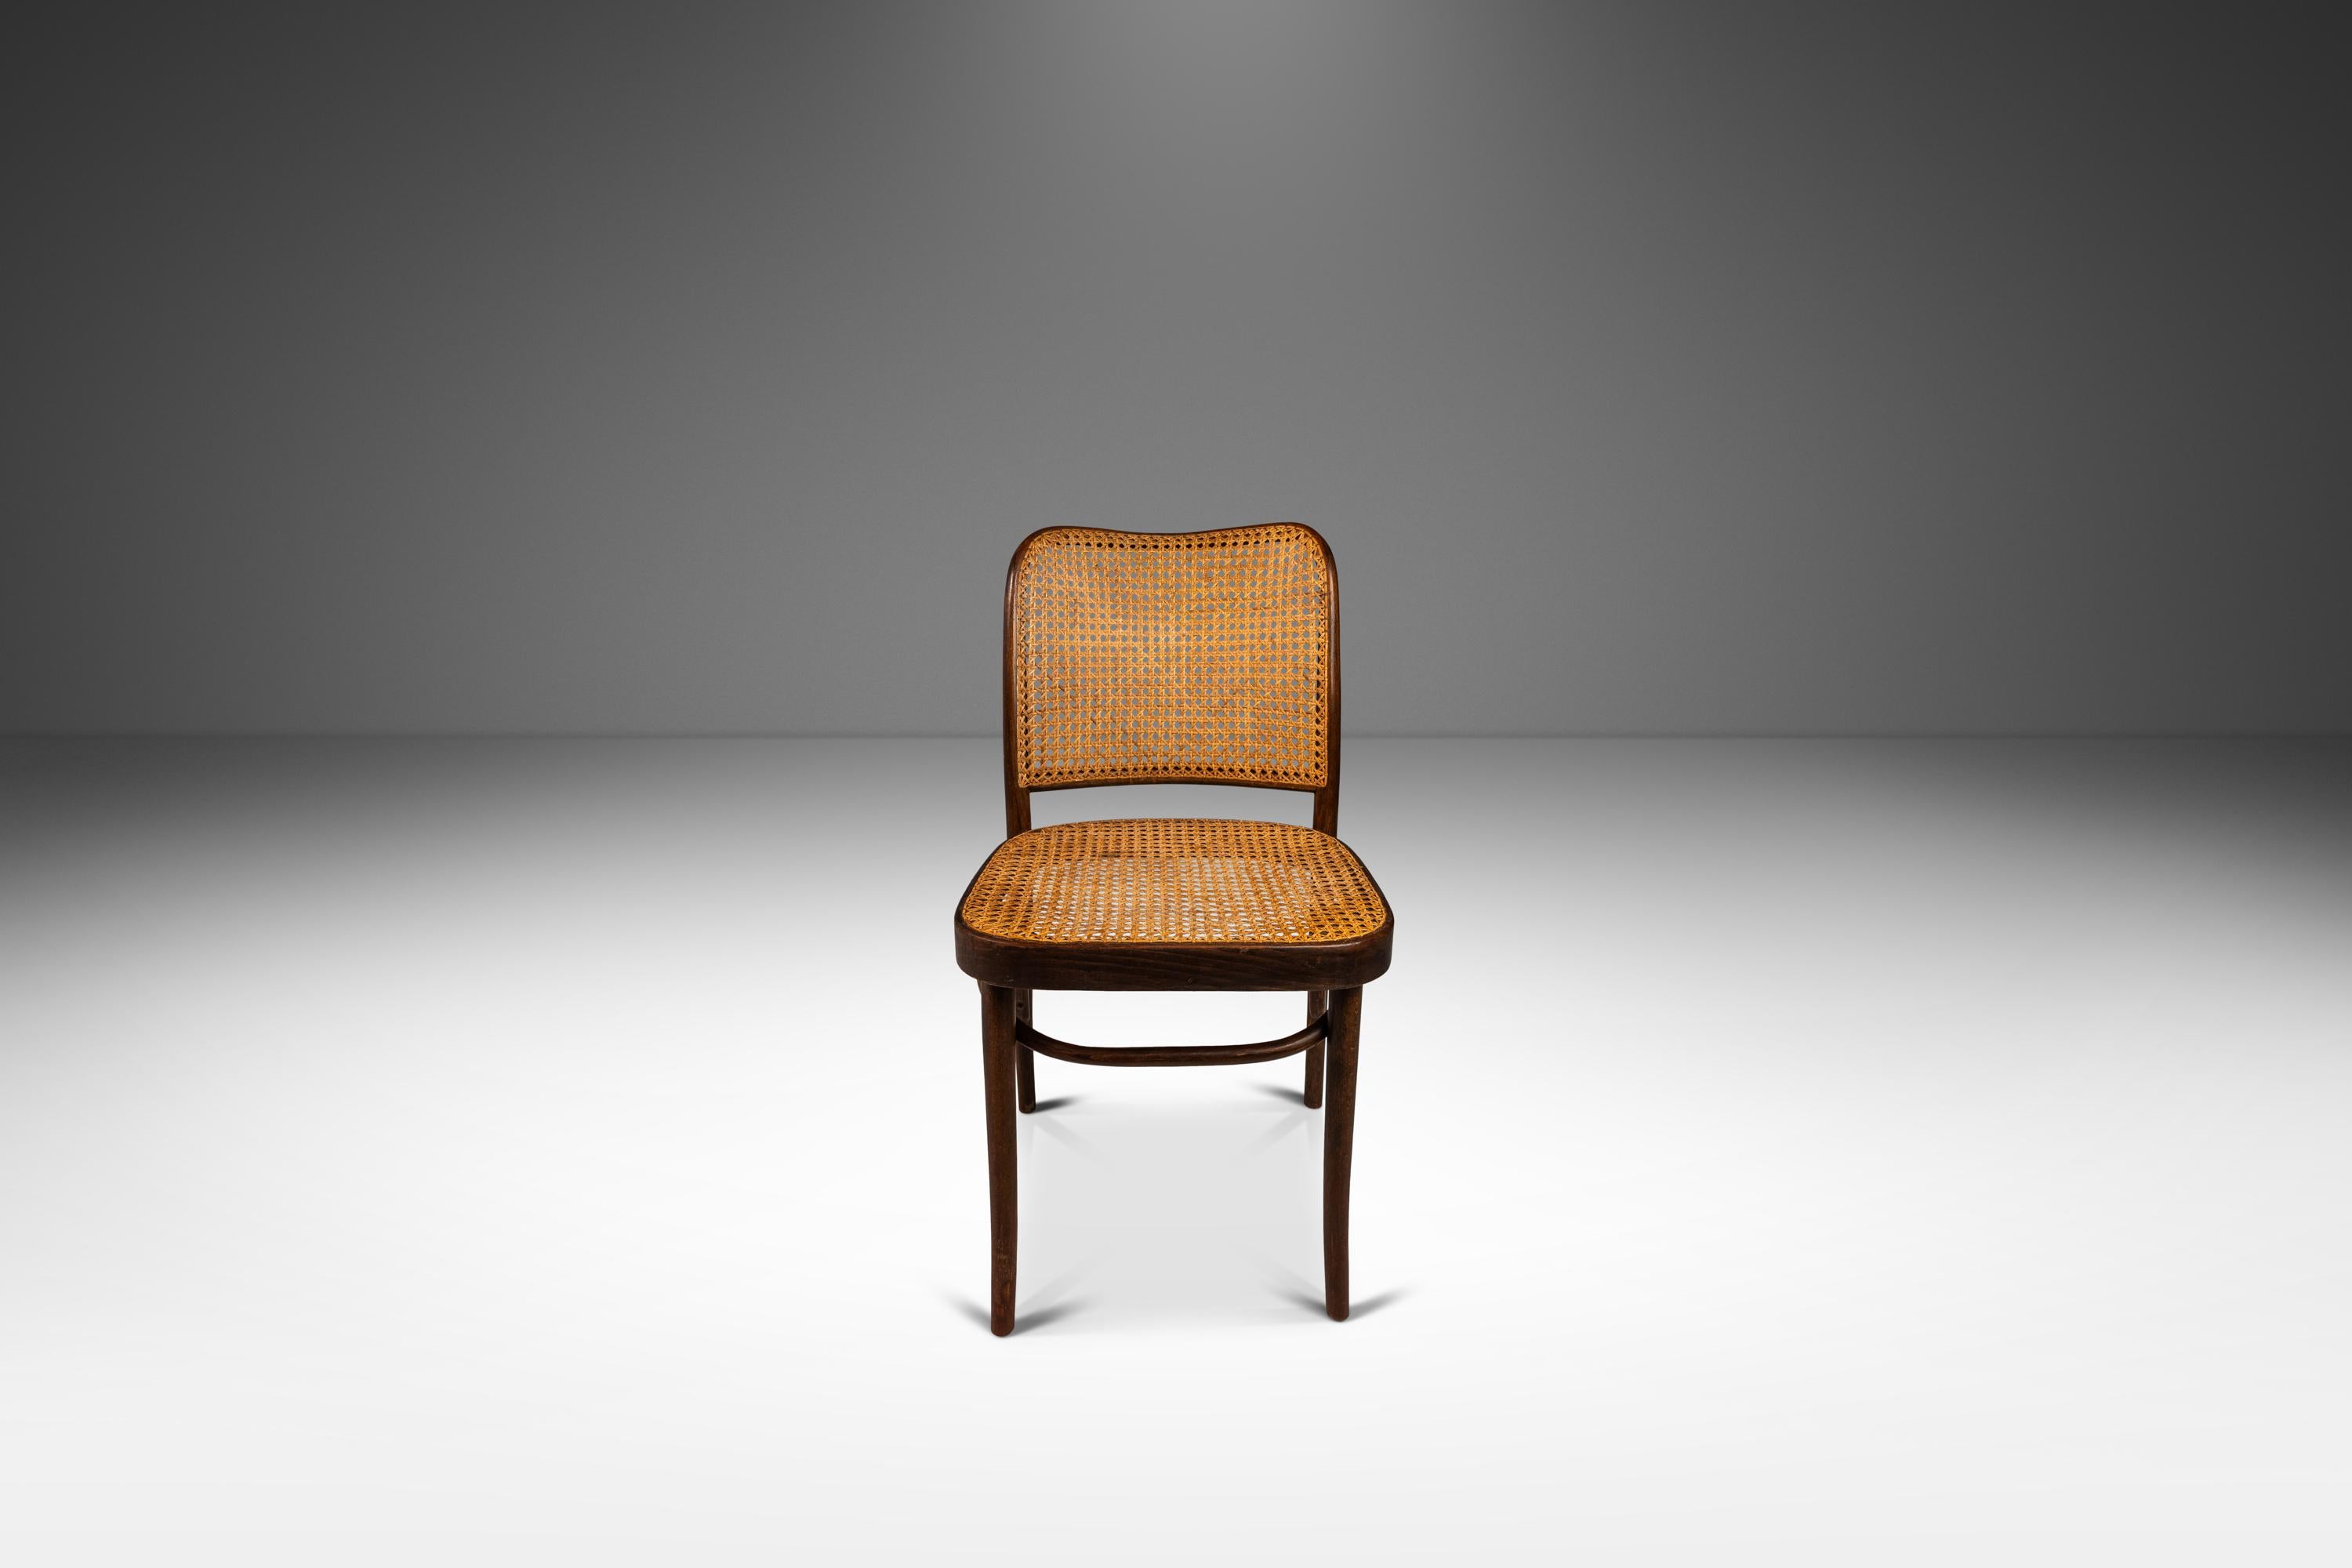 Voici une rare et magnifique chaise d'appoint Prague Model 811 en bois courbé, réalisée par les célèbres designers Josef Frank et Josef Hoffmann pour Stendig. Conçue dans les années 1960, cette chaise est une véritable représentation du design et de